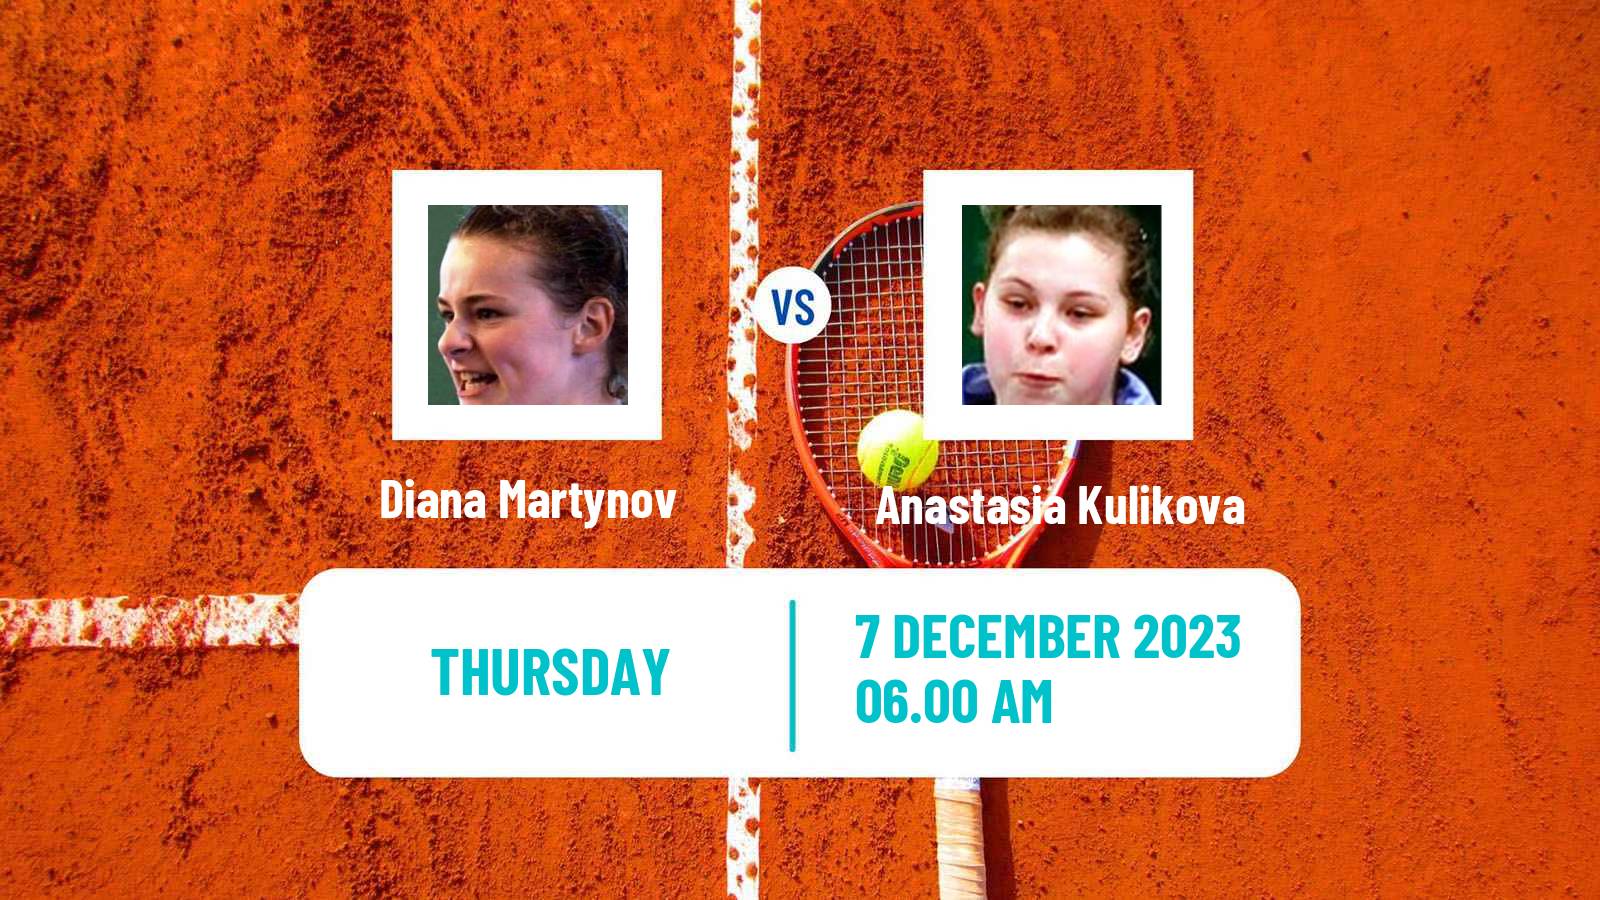 Tennis ITF W25 Monastir 5 Women Diana Martynov - Anastasia Kulikova